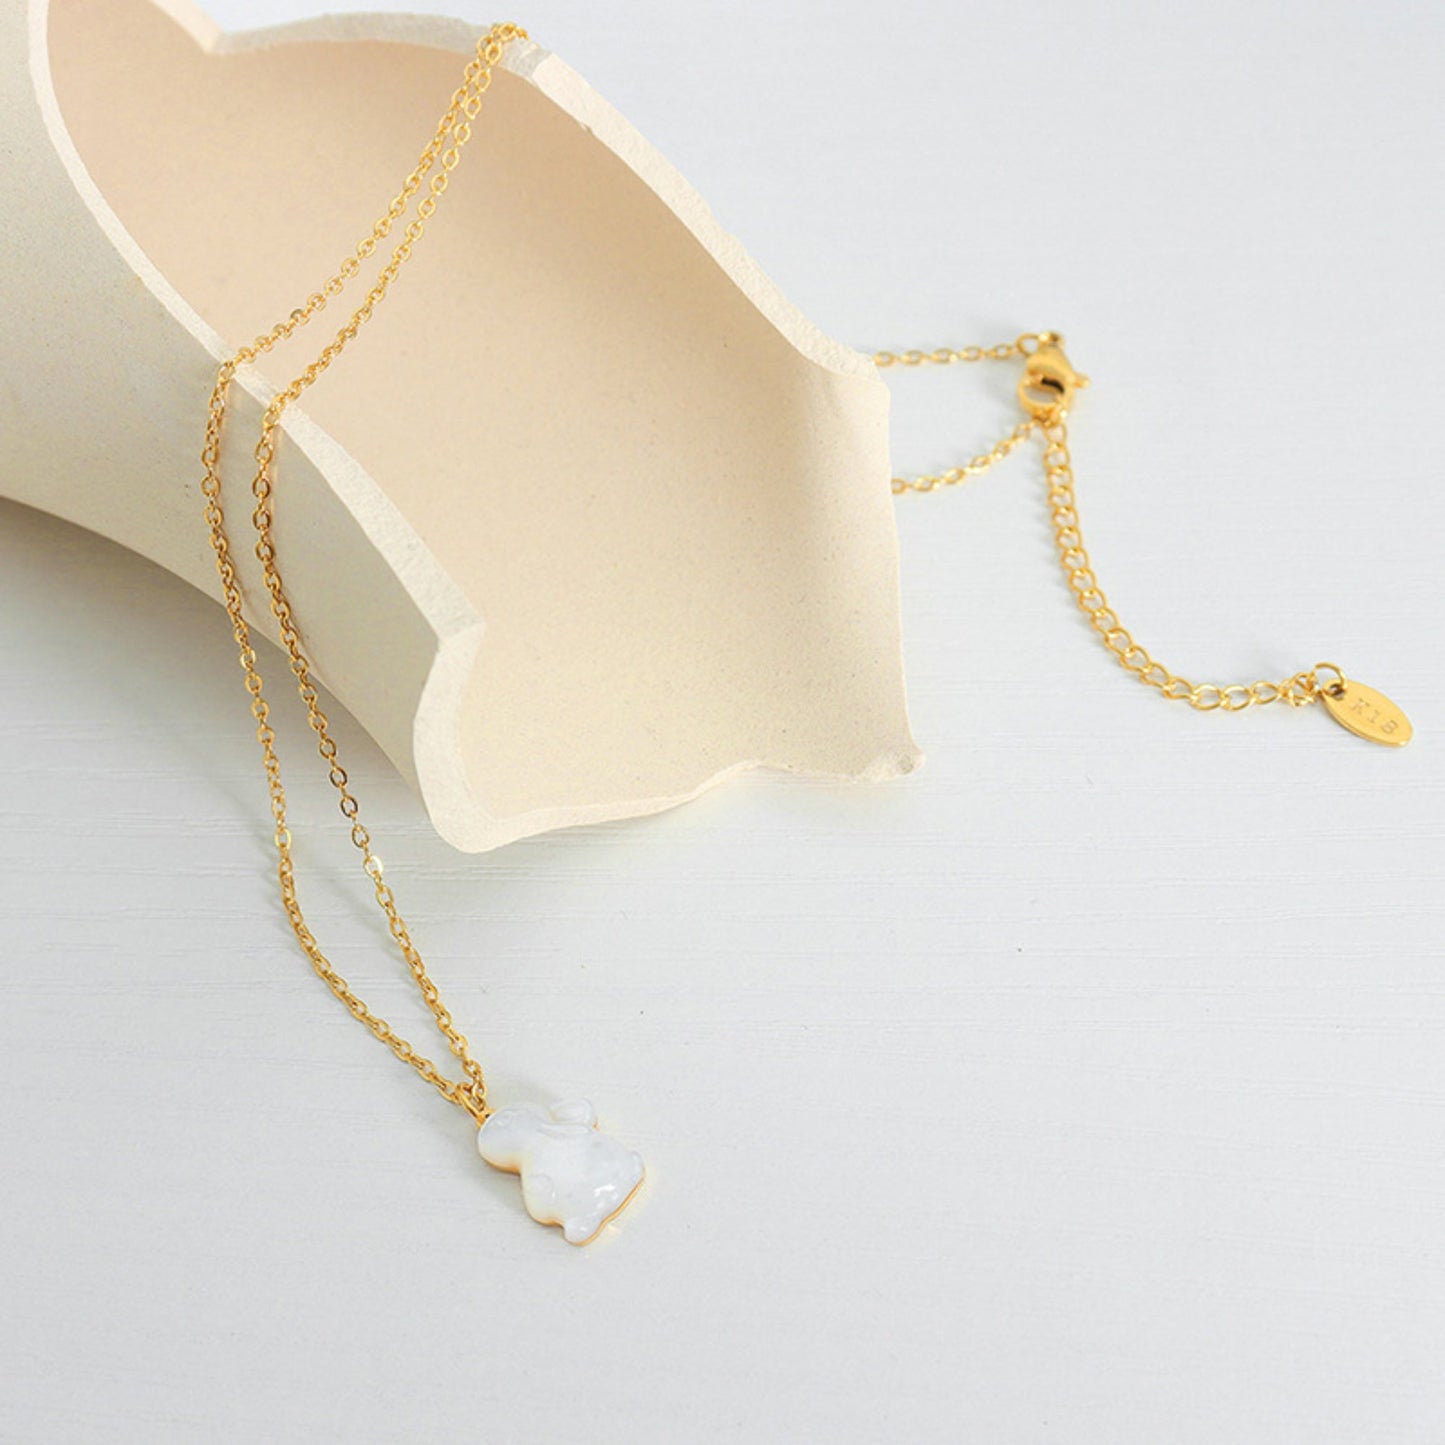 Rabbit Pendant Necklace/Waterproof